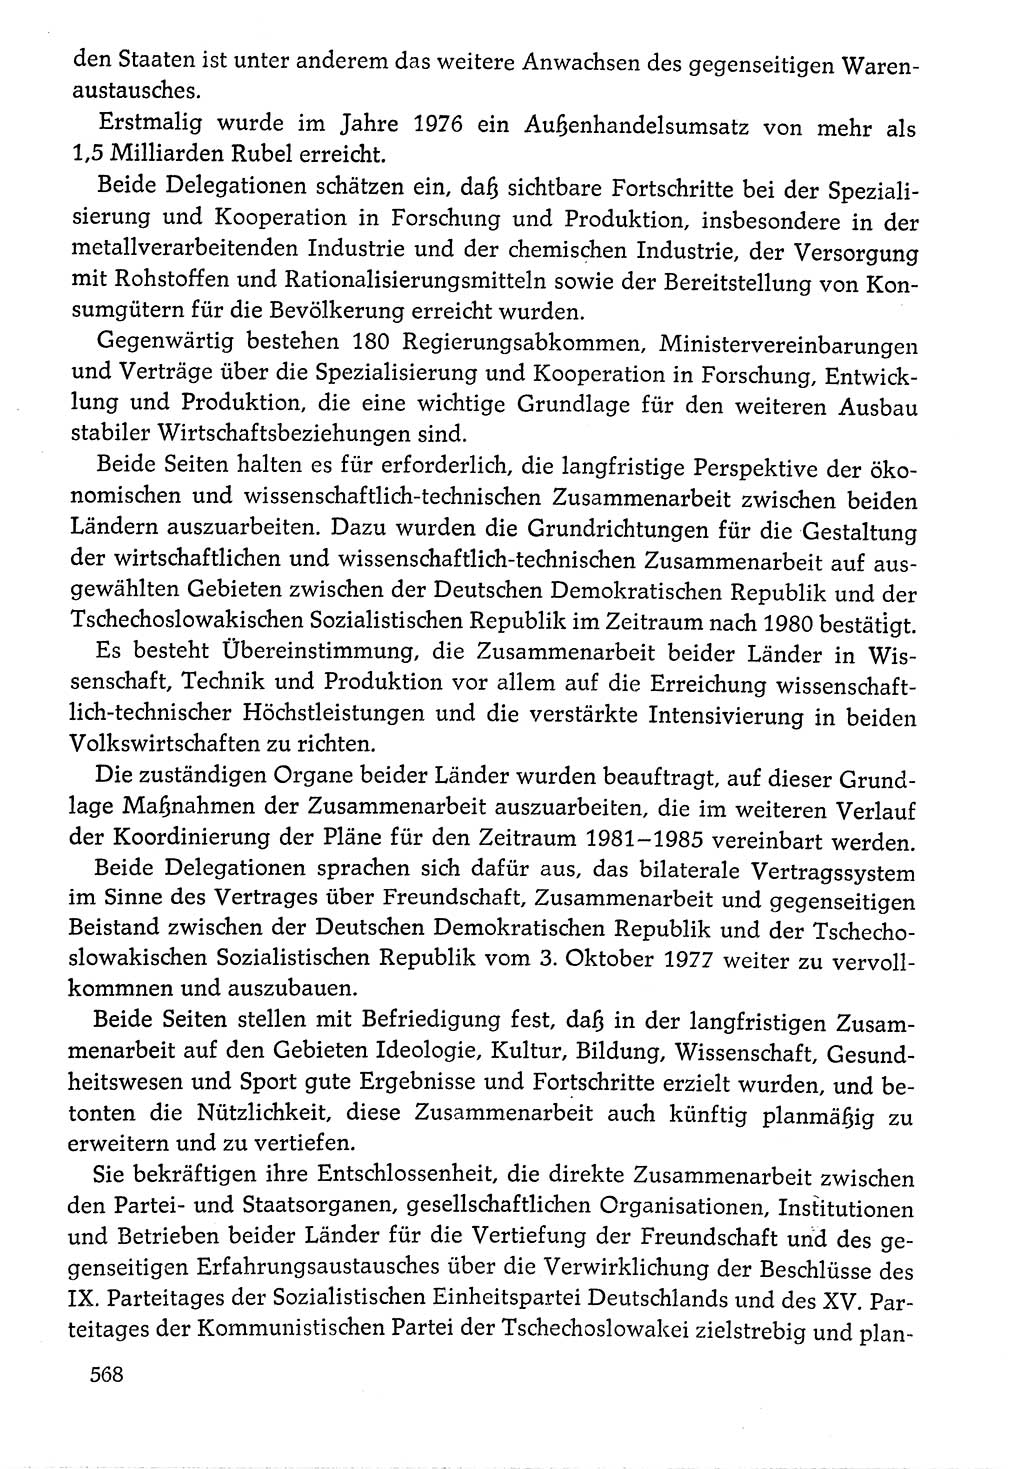 Dokumente der Sozialistischen Einheitspartei Deutschlands (SED) [Deutsche Demokratische Republik (DDR)] 1976-1977, Seite 568 (Dok. SED DDR 1976-1977, S. 568)